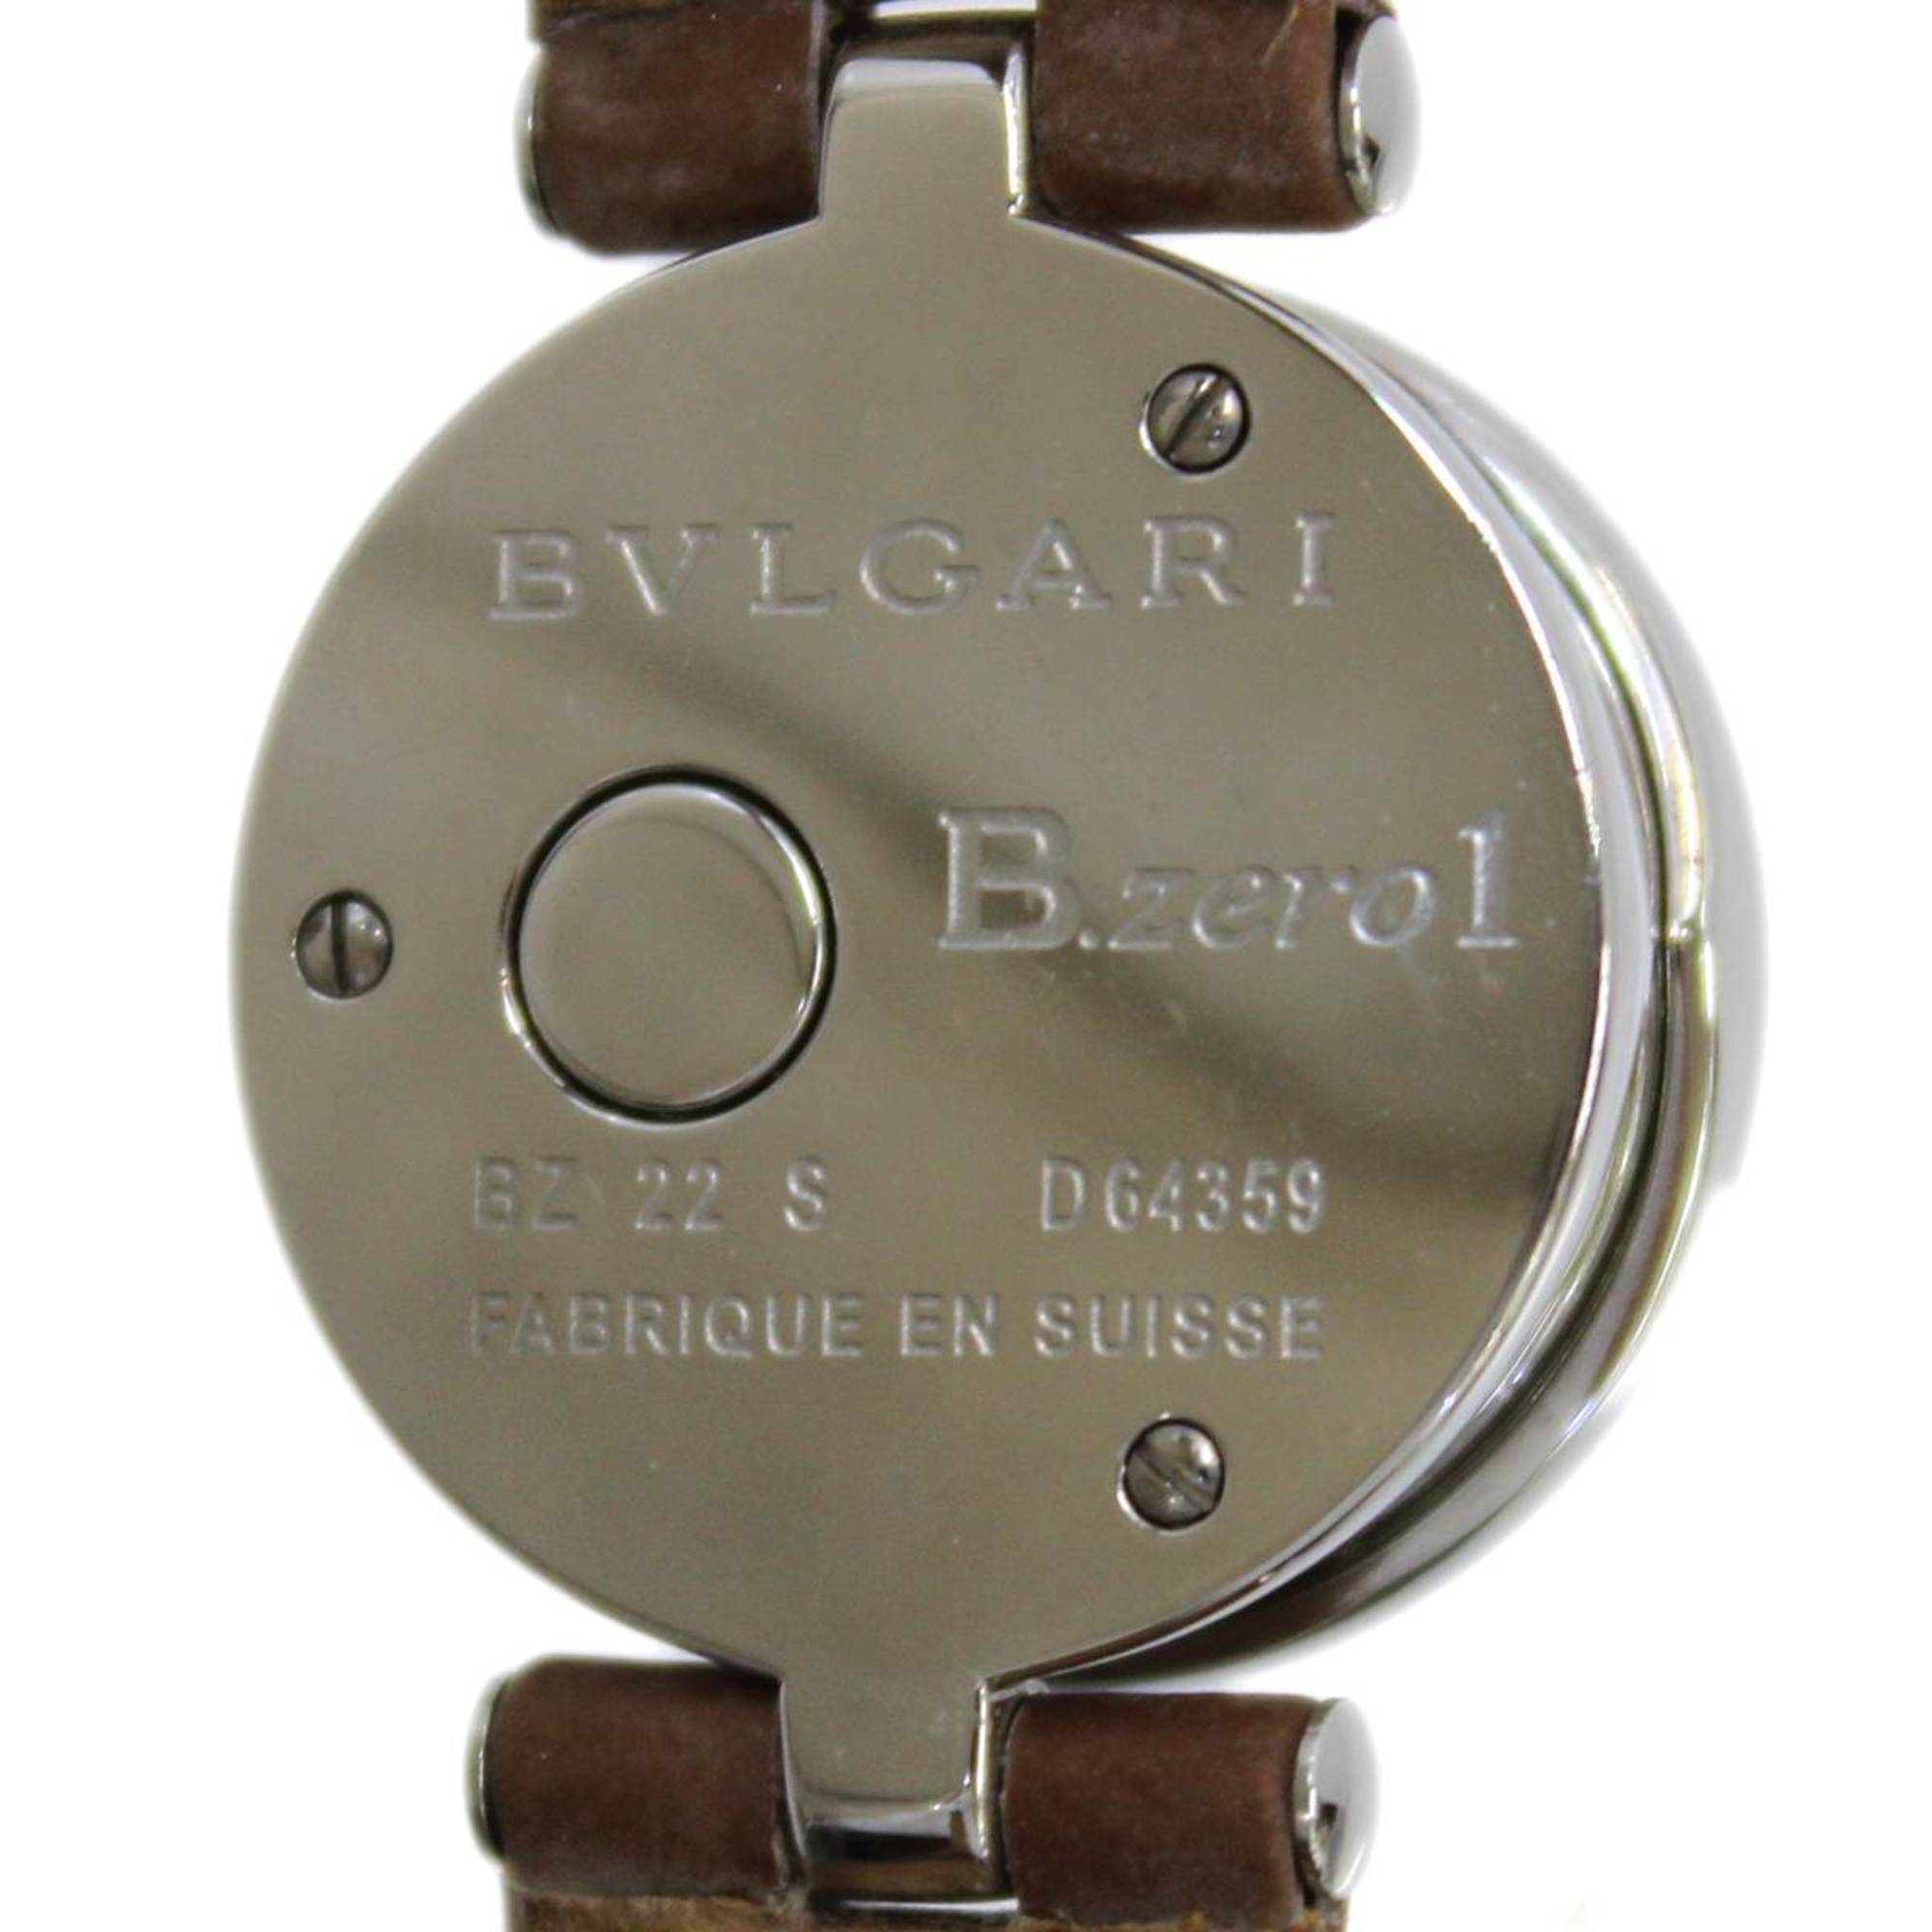 BVLGARI Bvlgari Ladies Quartz Watch B-ZERO1 SS BZ22S D64359